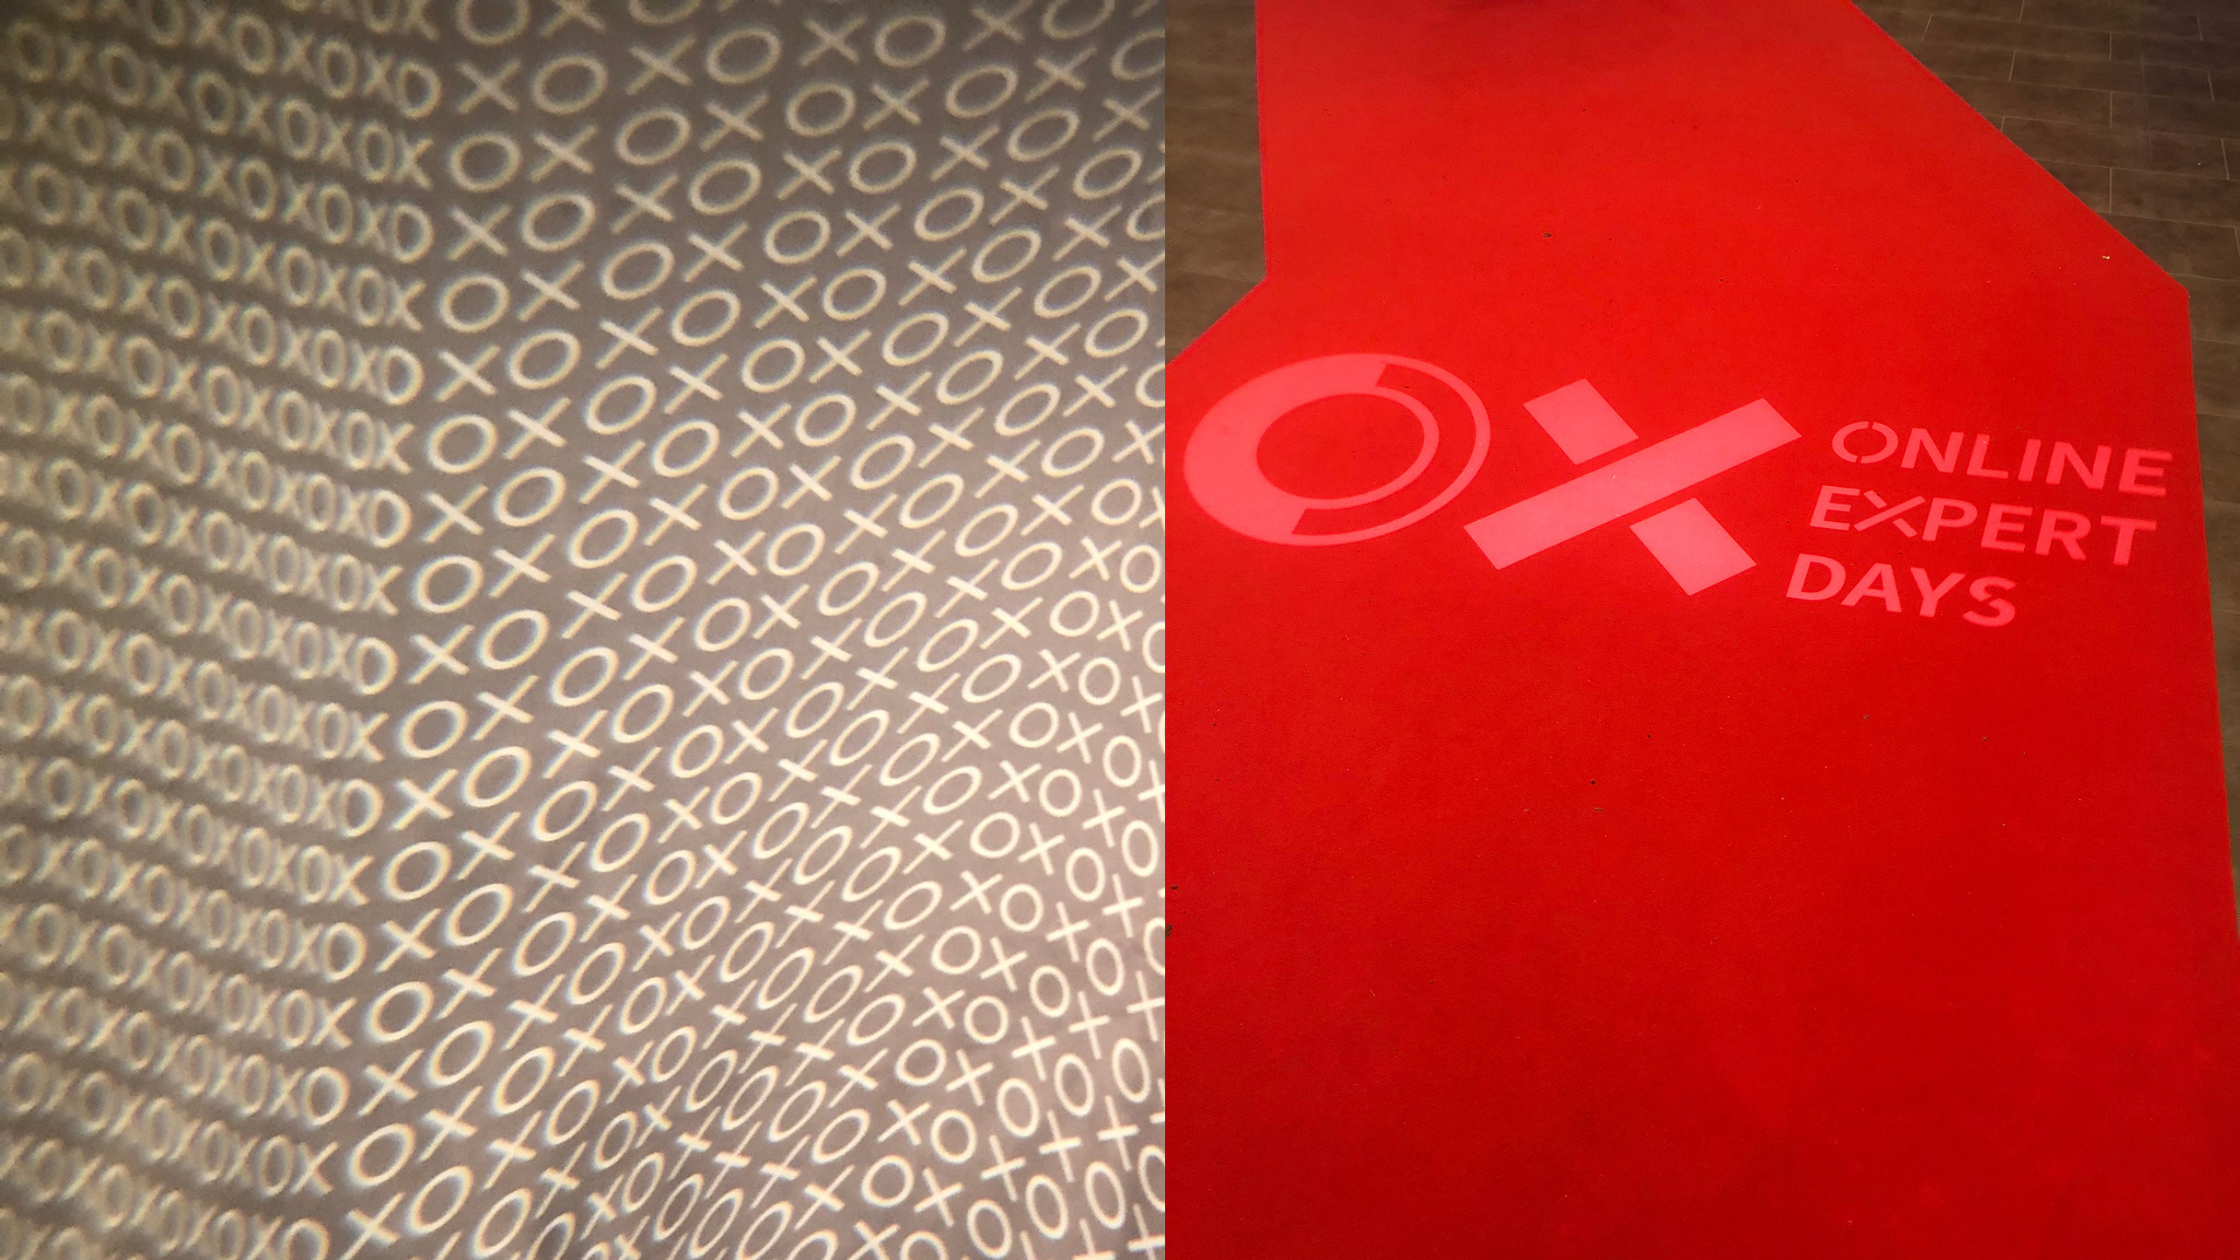 links abstrakter Hintergrund mit den Buchstaben O und X; rechts roter Teppich mit den projizierten Buchstaben O und X sowie dem Text Online Expert Days